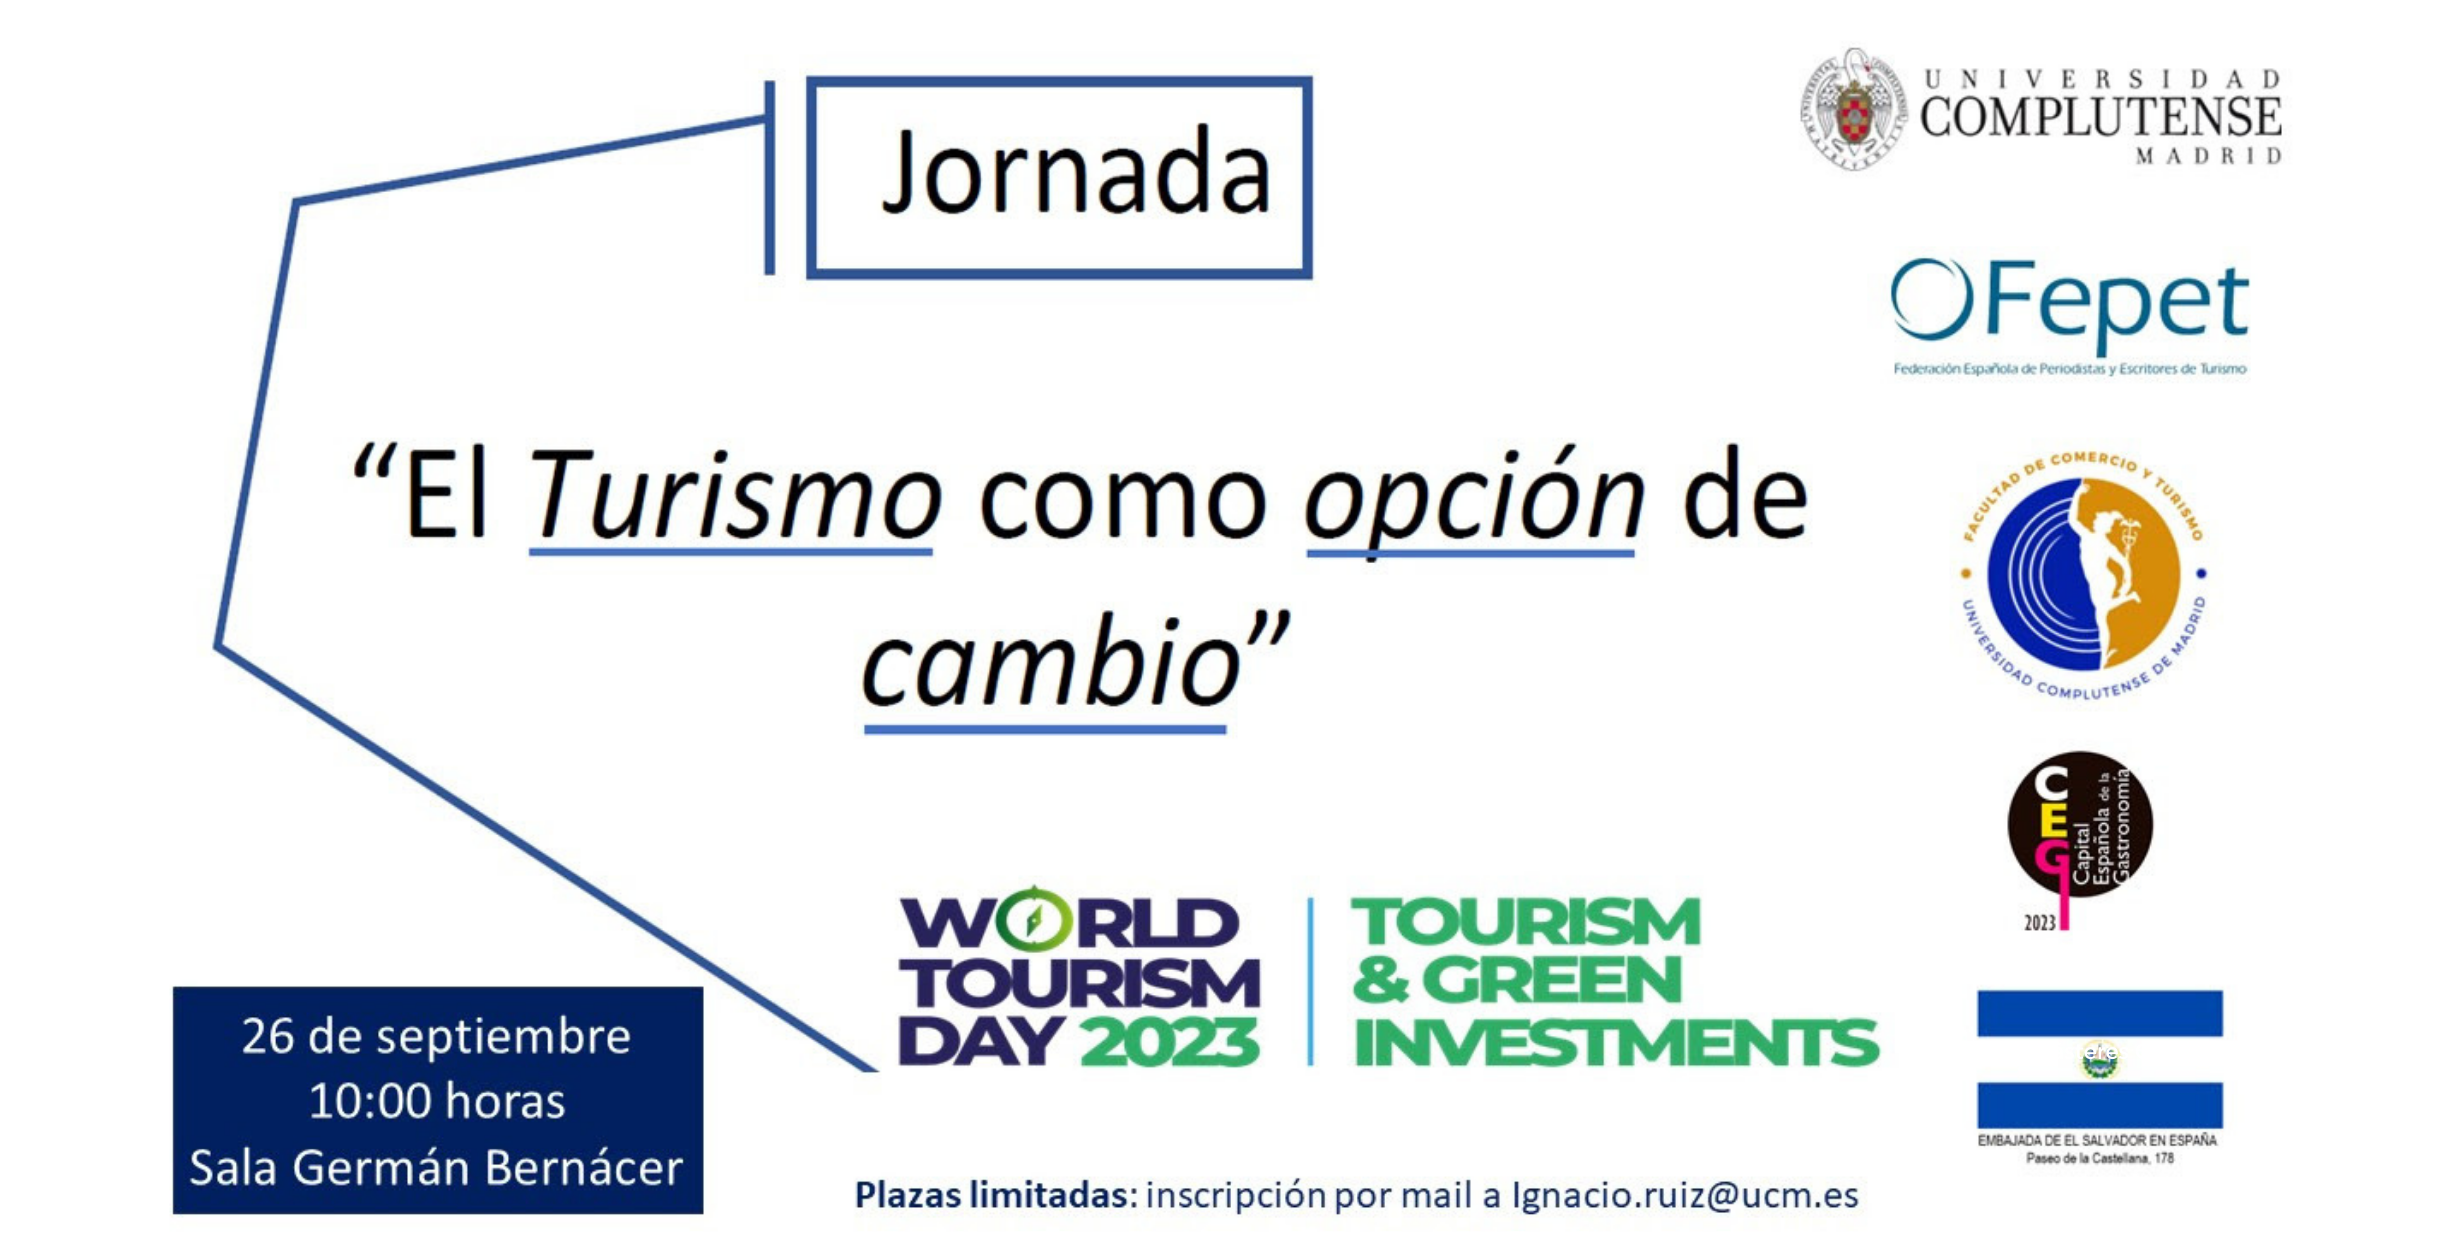 Jornada sobre Planificación y Gestión de Destinos Turísticos: Un Evento Imperdible en Madrid